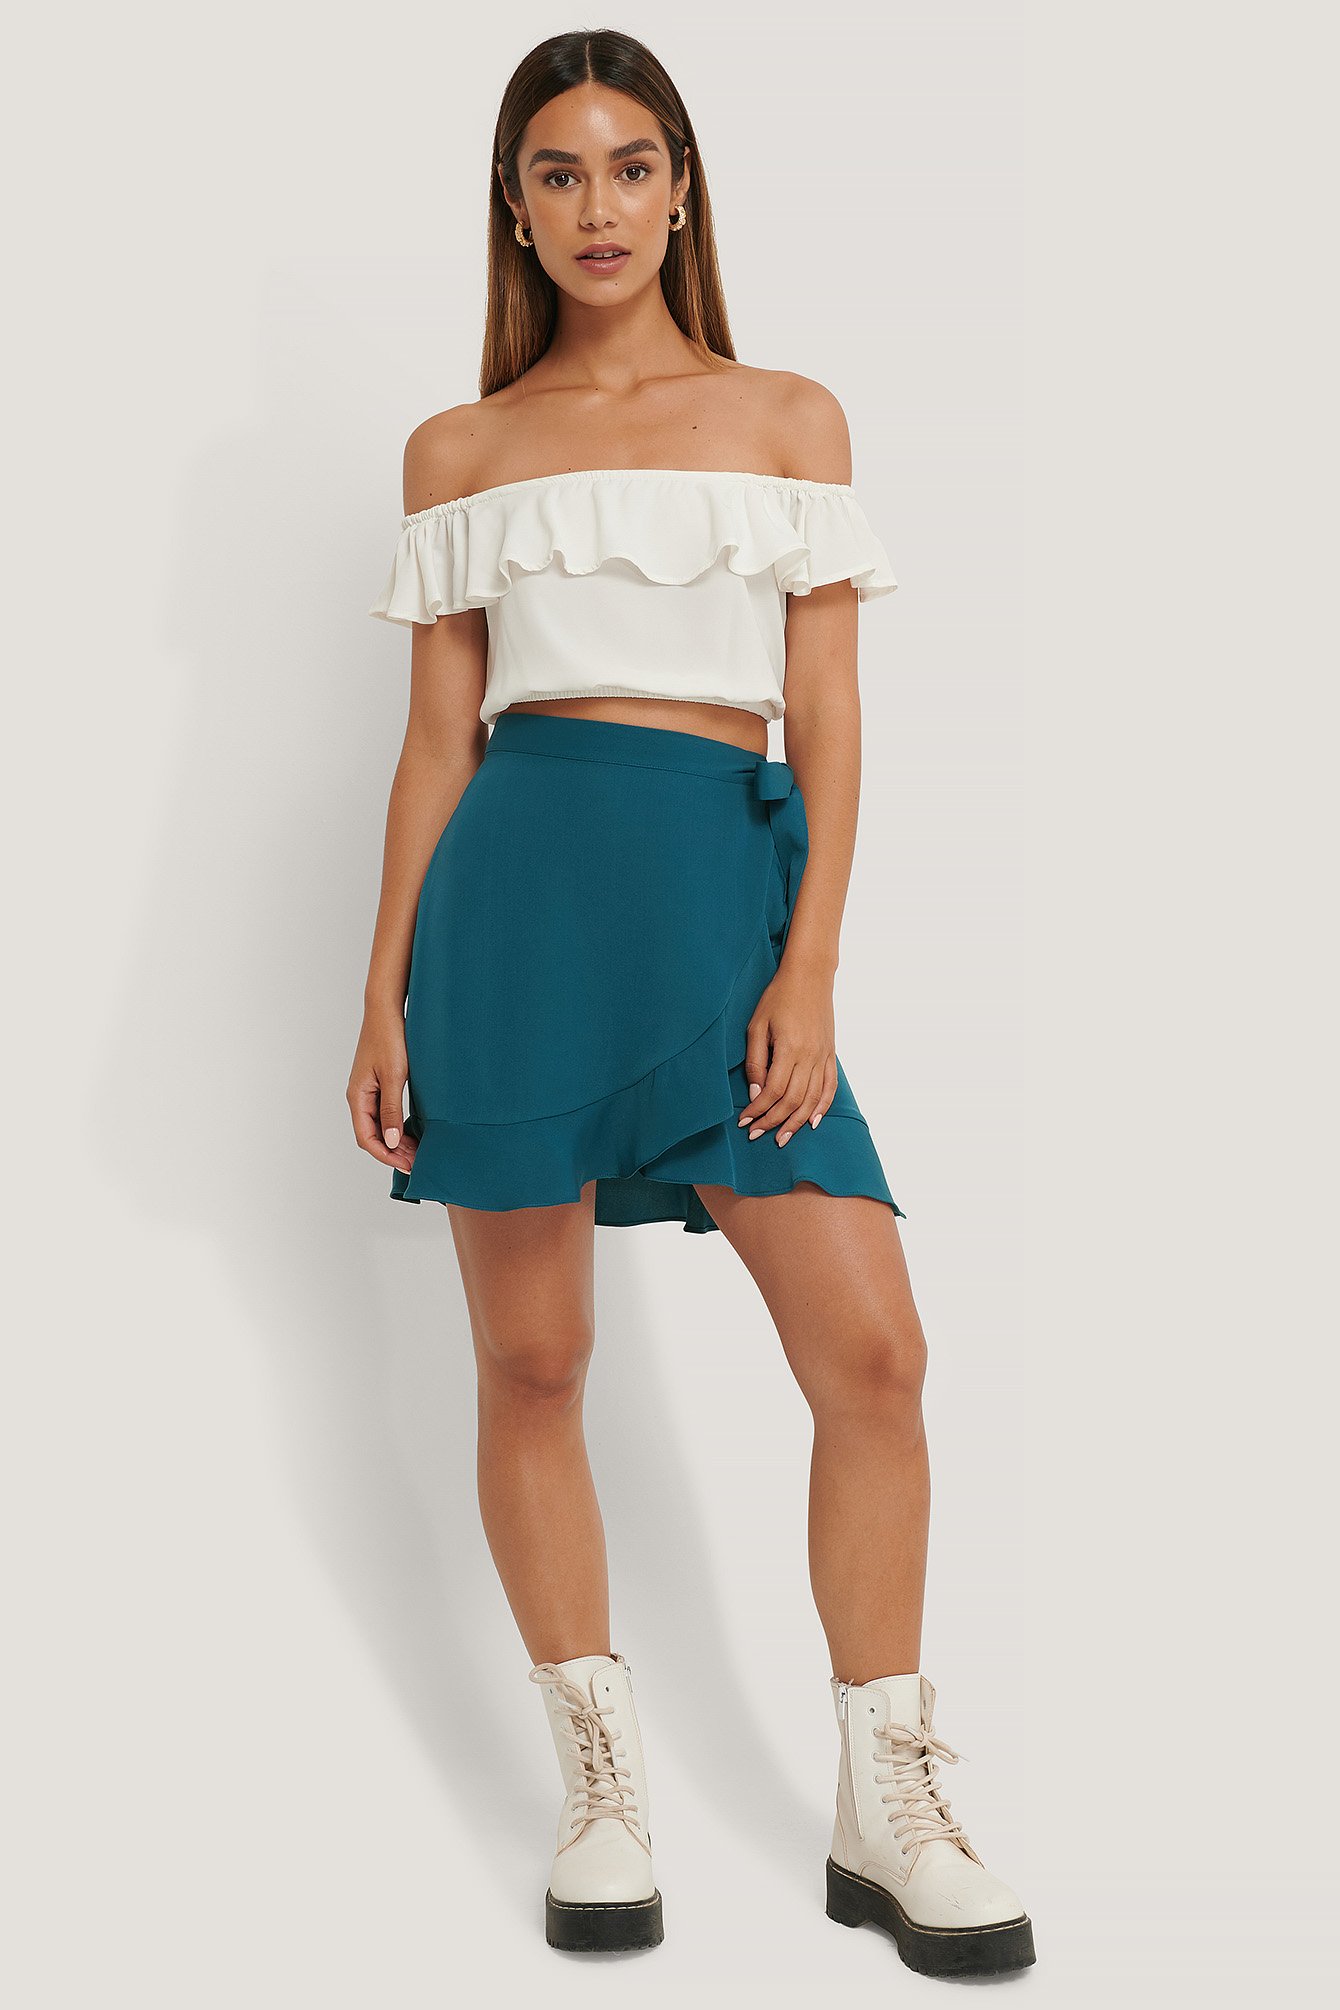 Flounce Overlap Mini Skirt Outfit